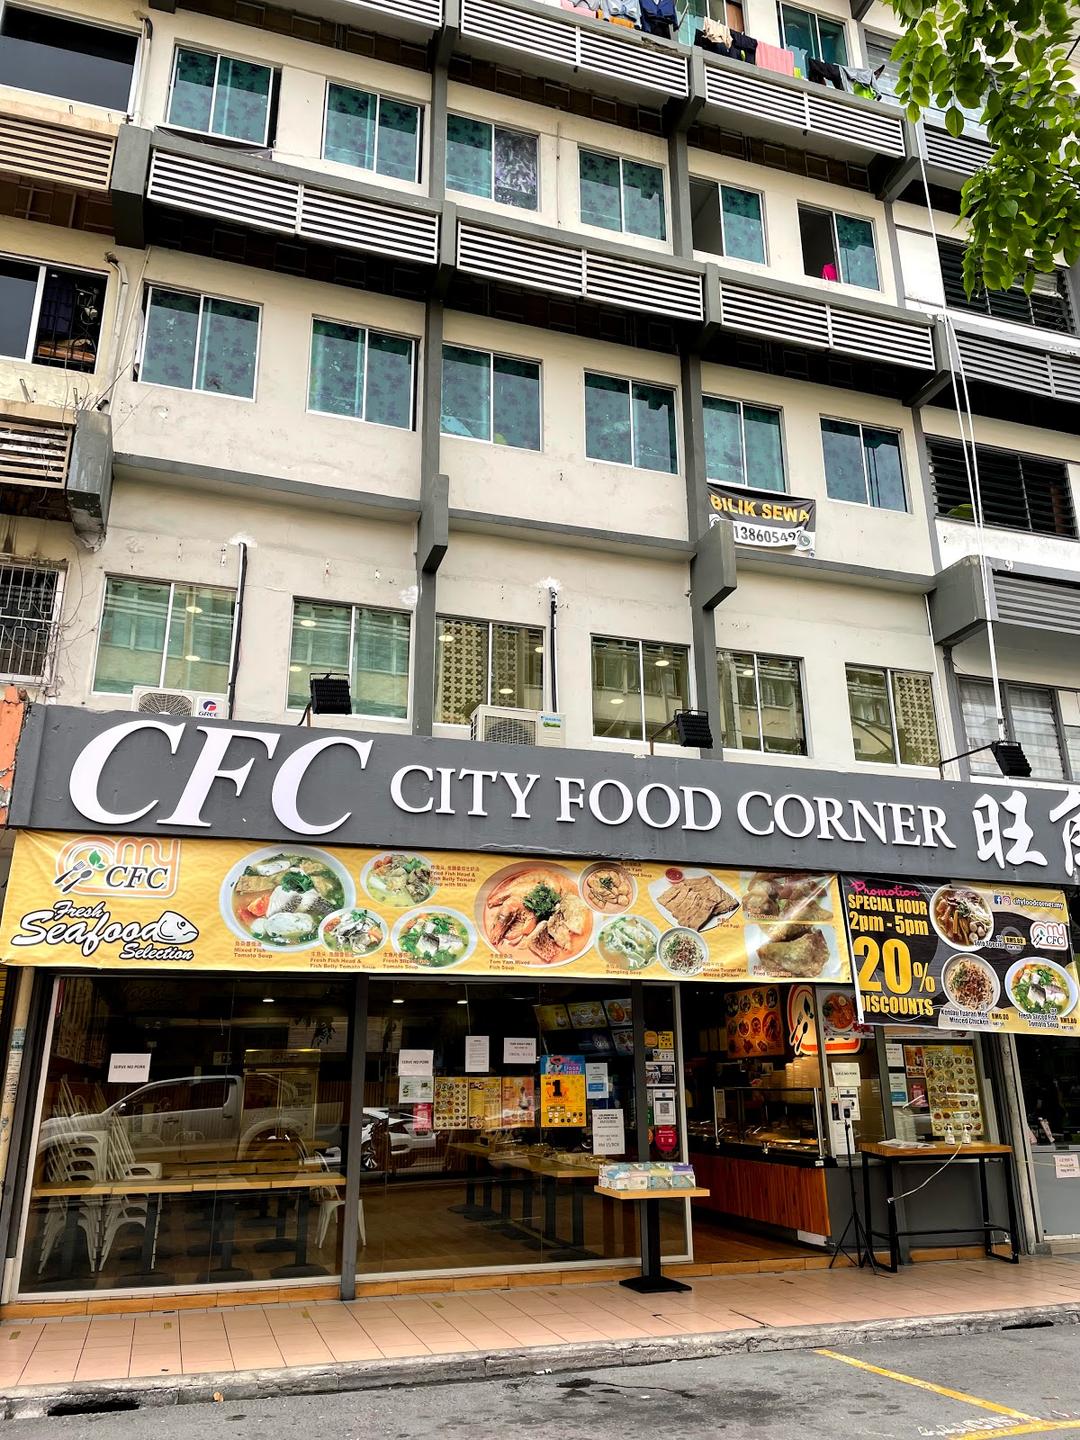 Photo of City Food Corner @ Gaya Street - Kota Kinabalu, Sabah, Malaysia